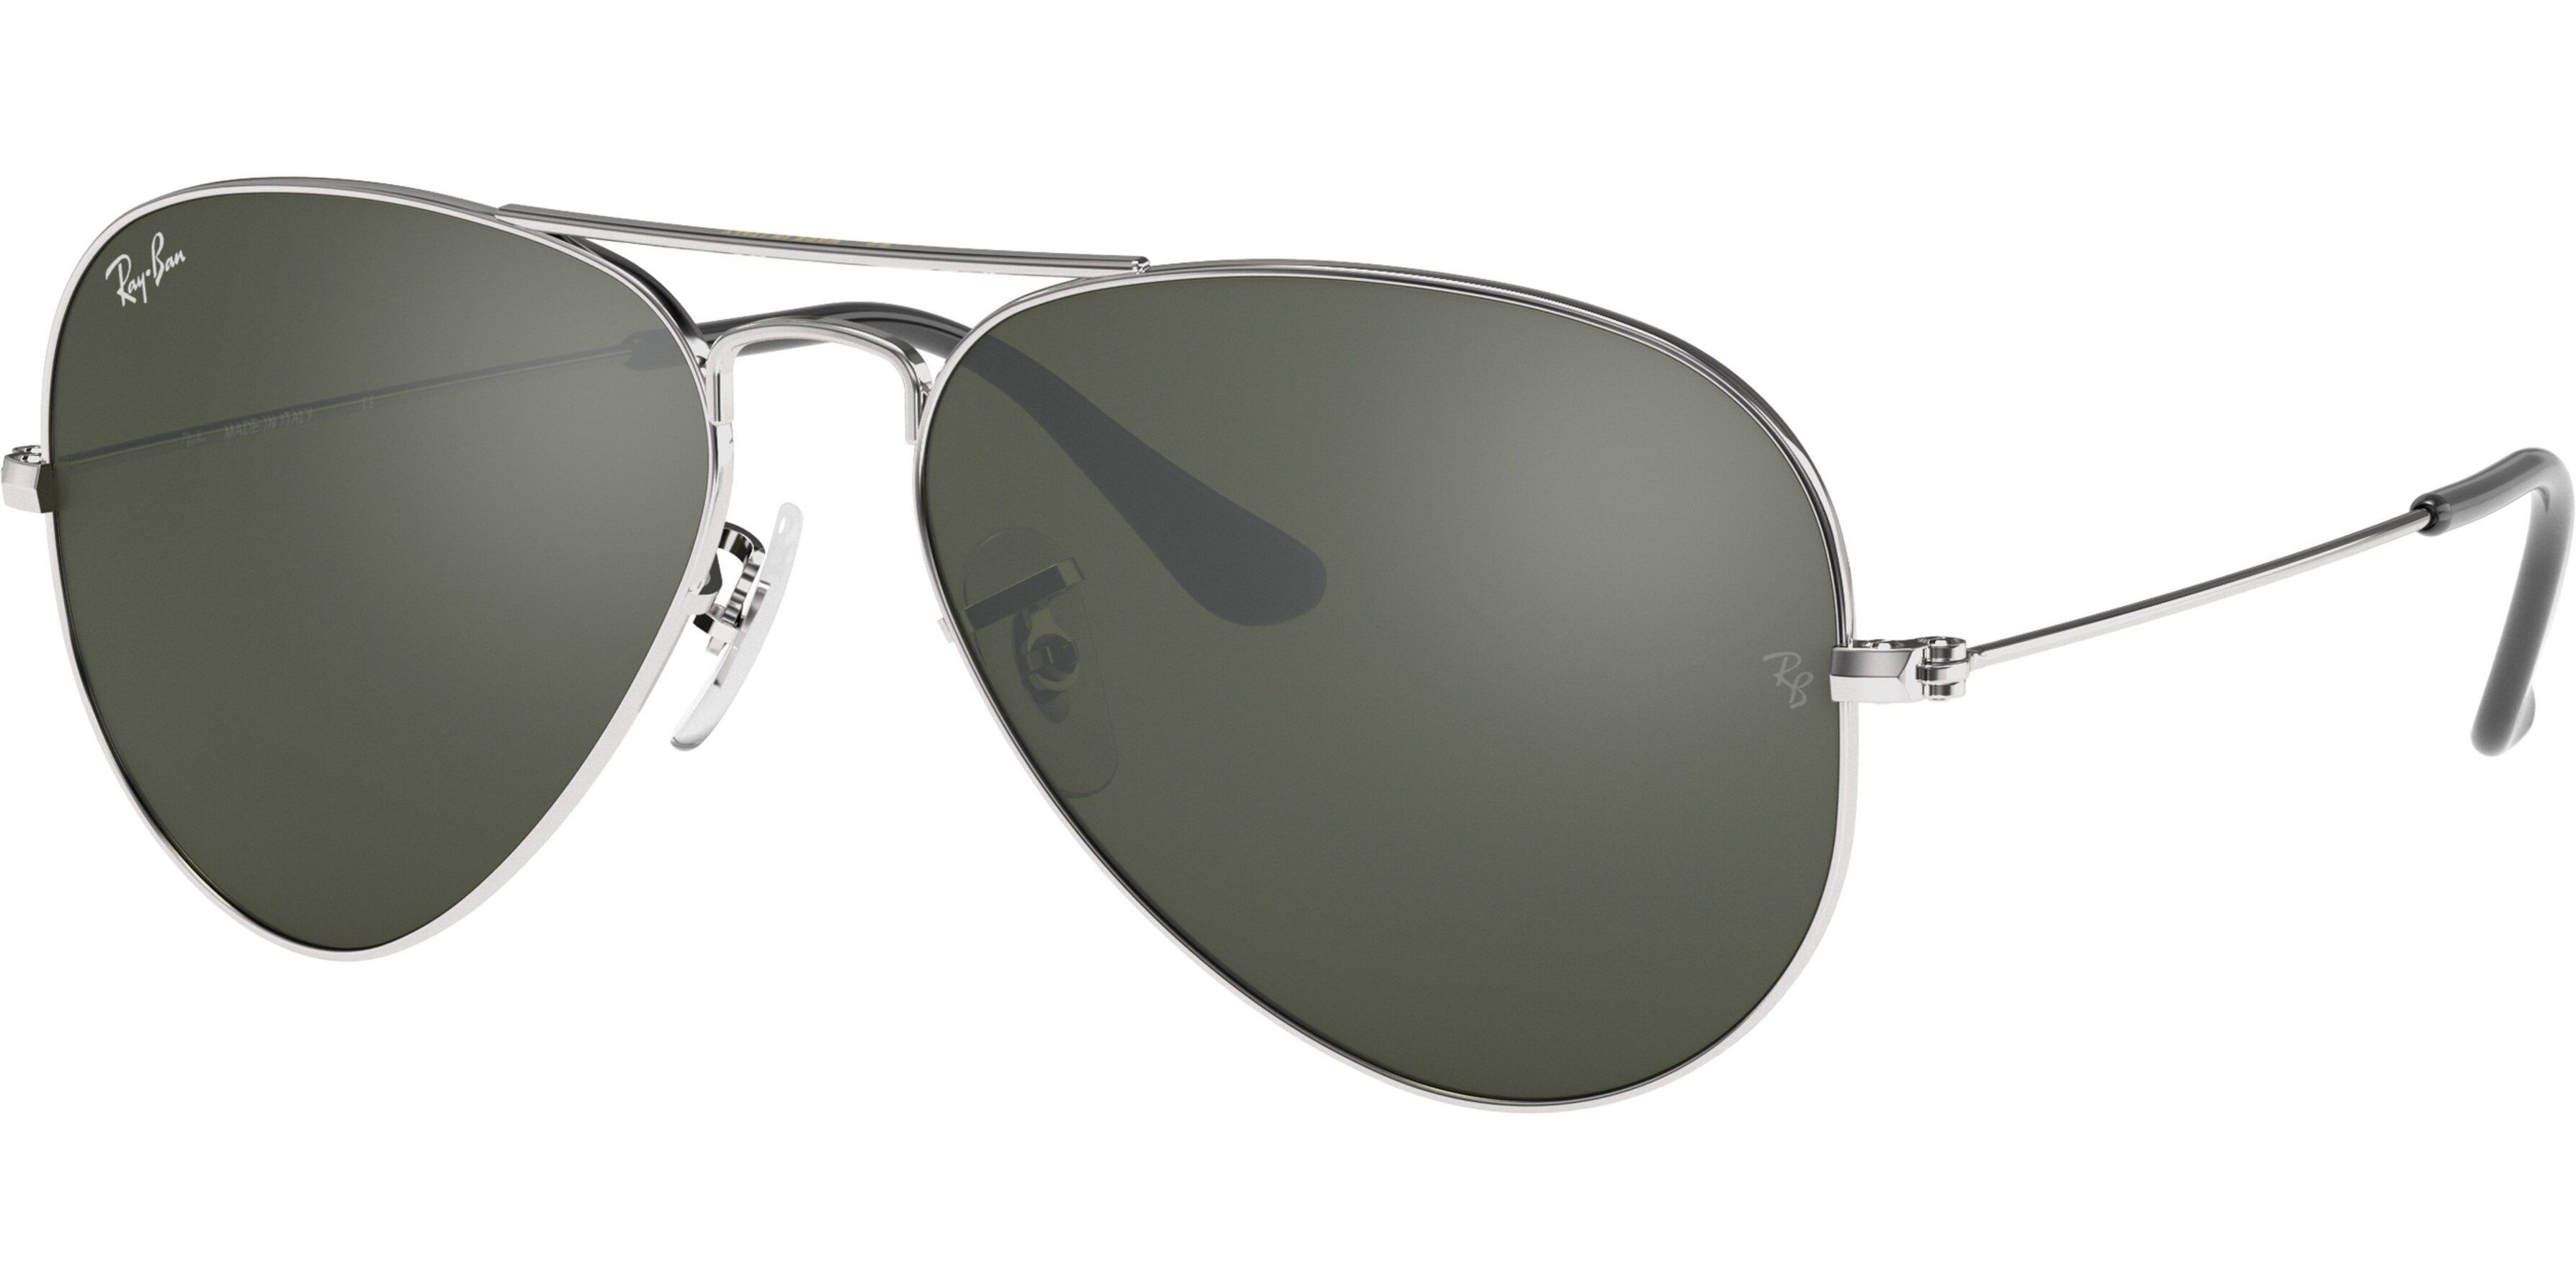 Sluneční brýle Ray-Ban® model 3025, barva obruby stříbrná lesk, čočka stříbrná zrcadlo, kód barevné varianty W3277. 